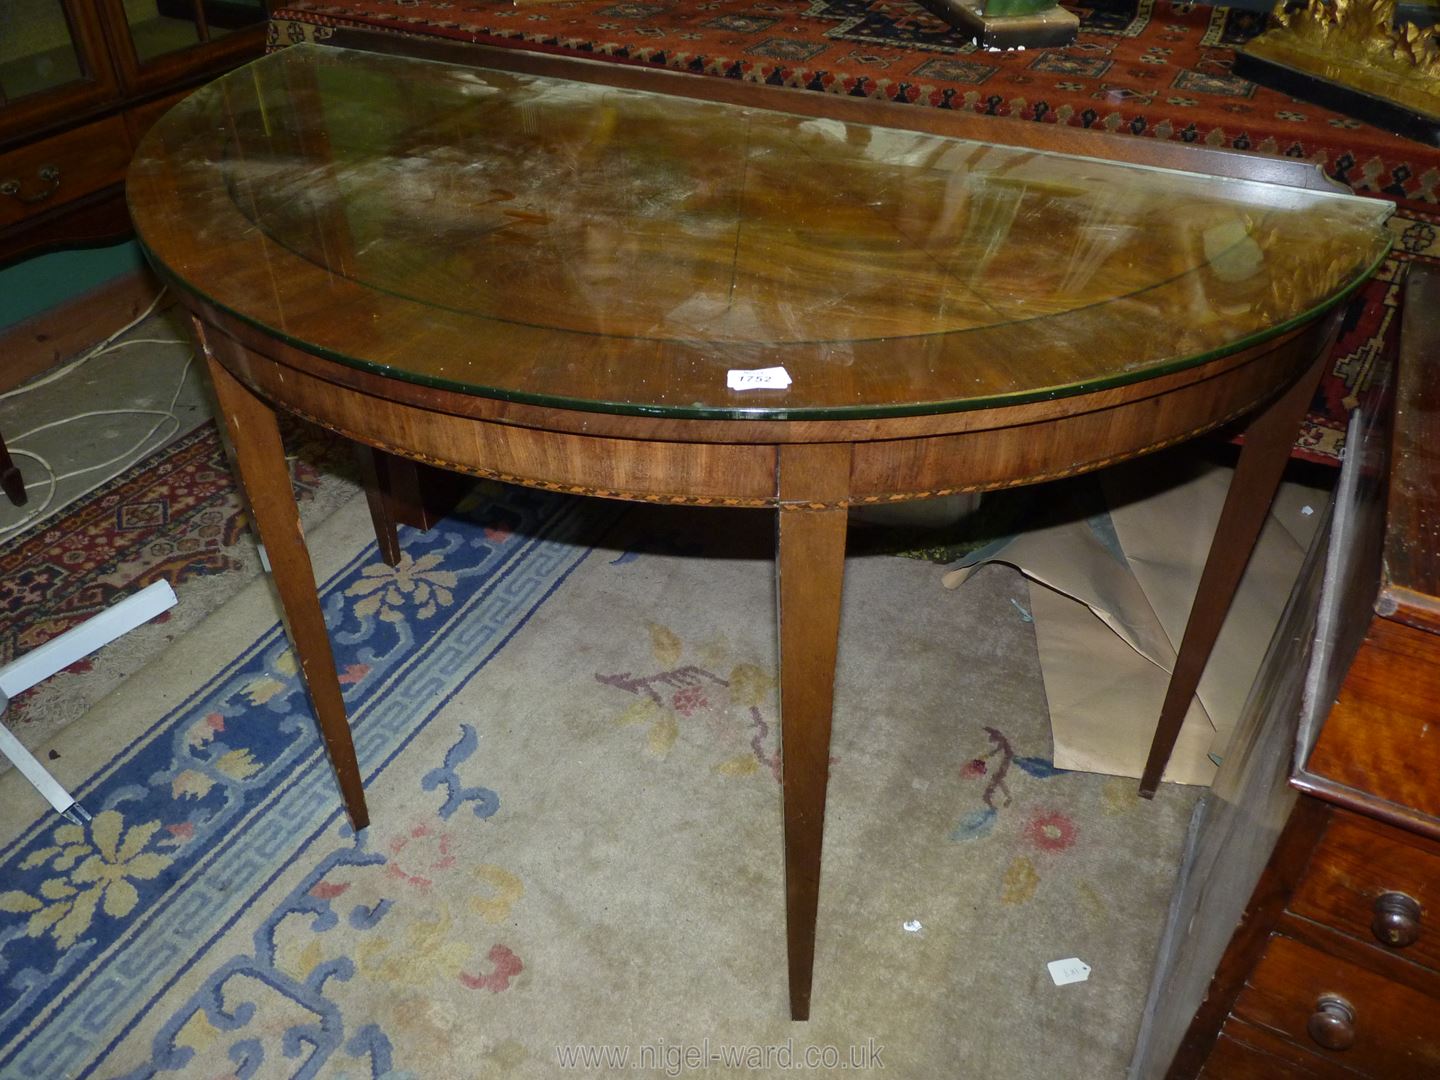 A Mahogany/Walnut "D" shaped side Table having a cross-banded top,